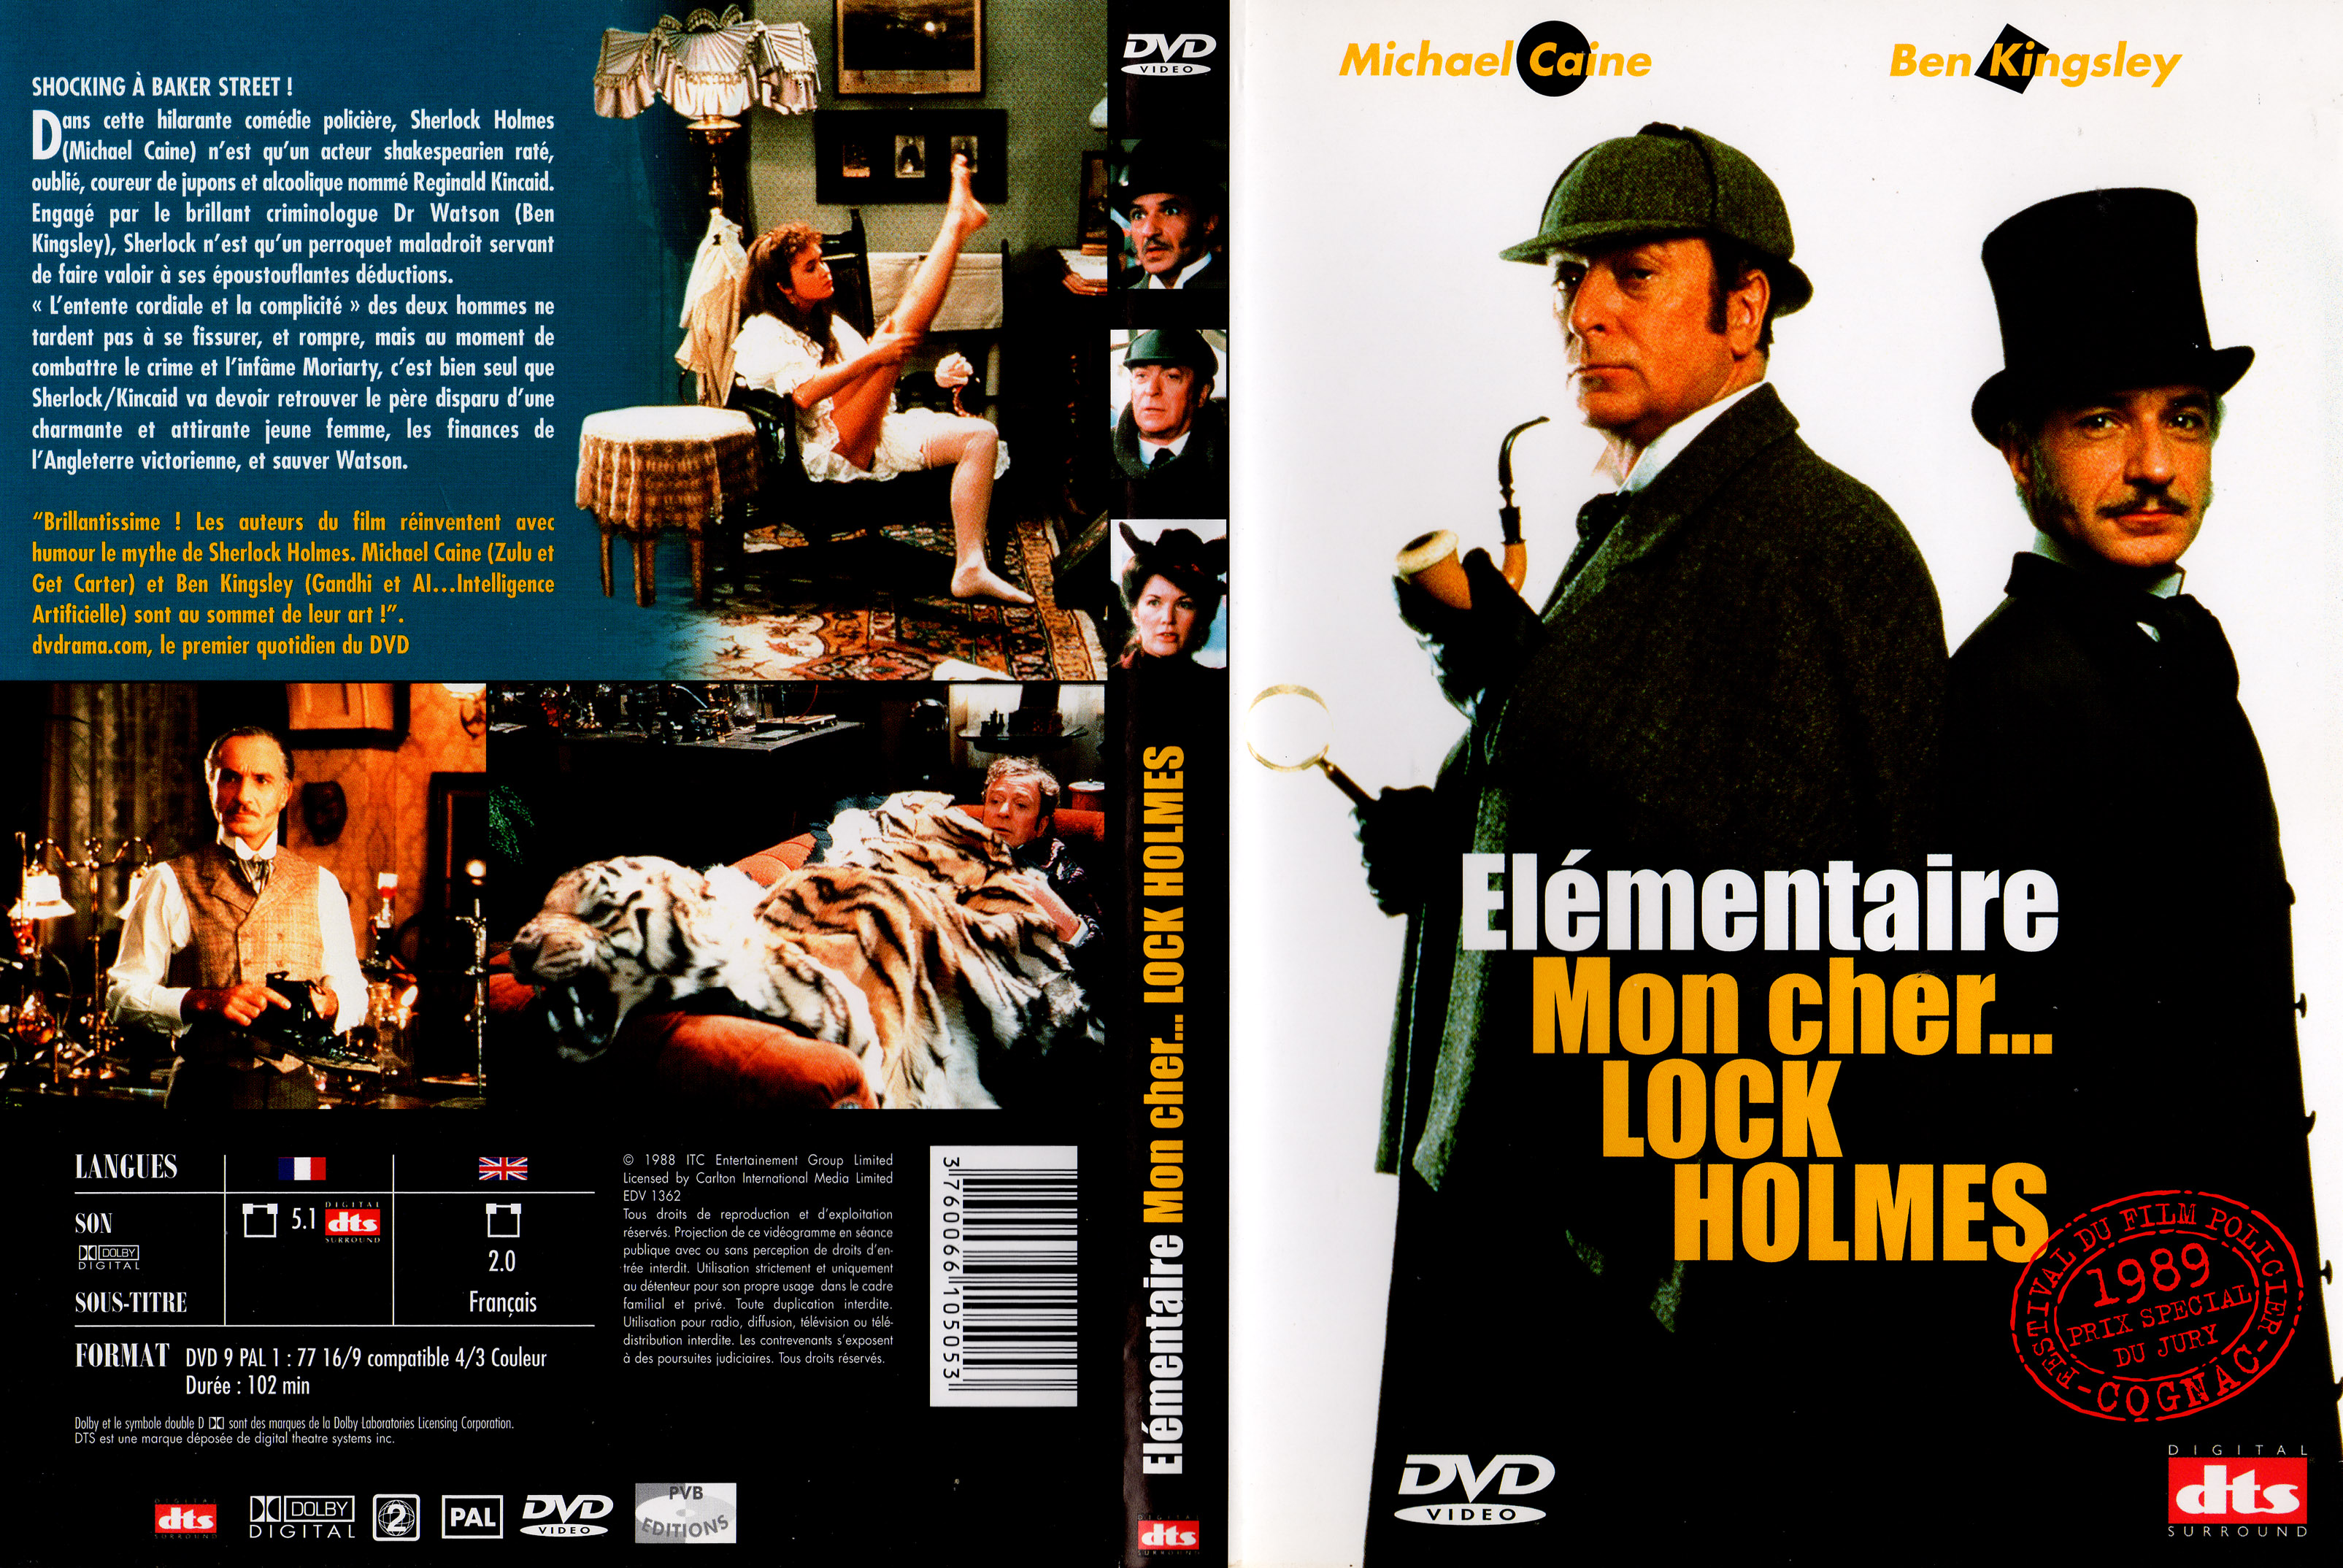 Jaquette DVD de Elementaire mon cher Lock Holmes v3 - Cinéma Passion